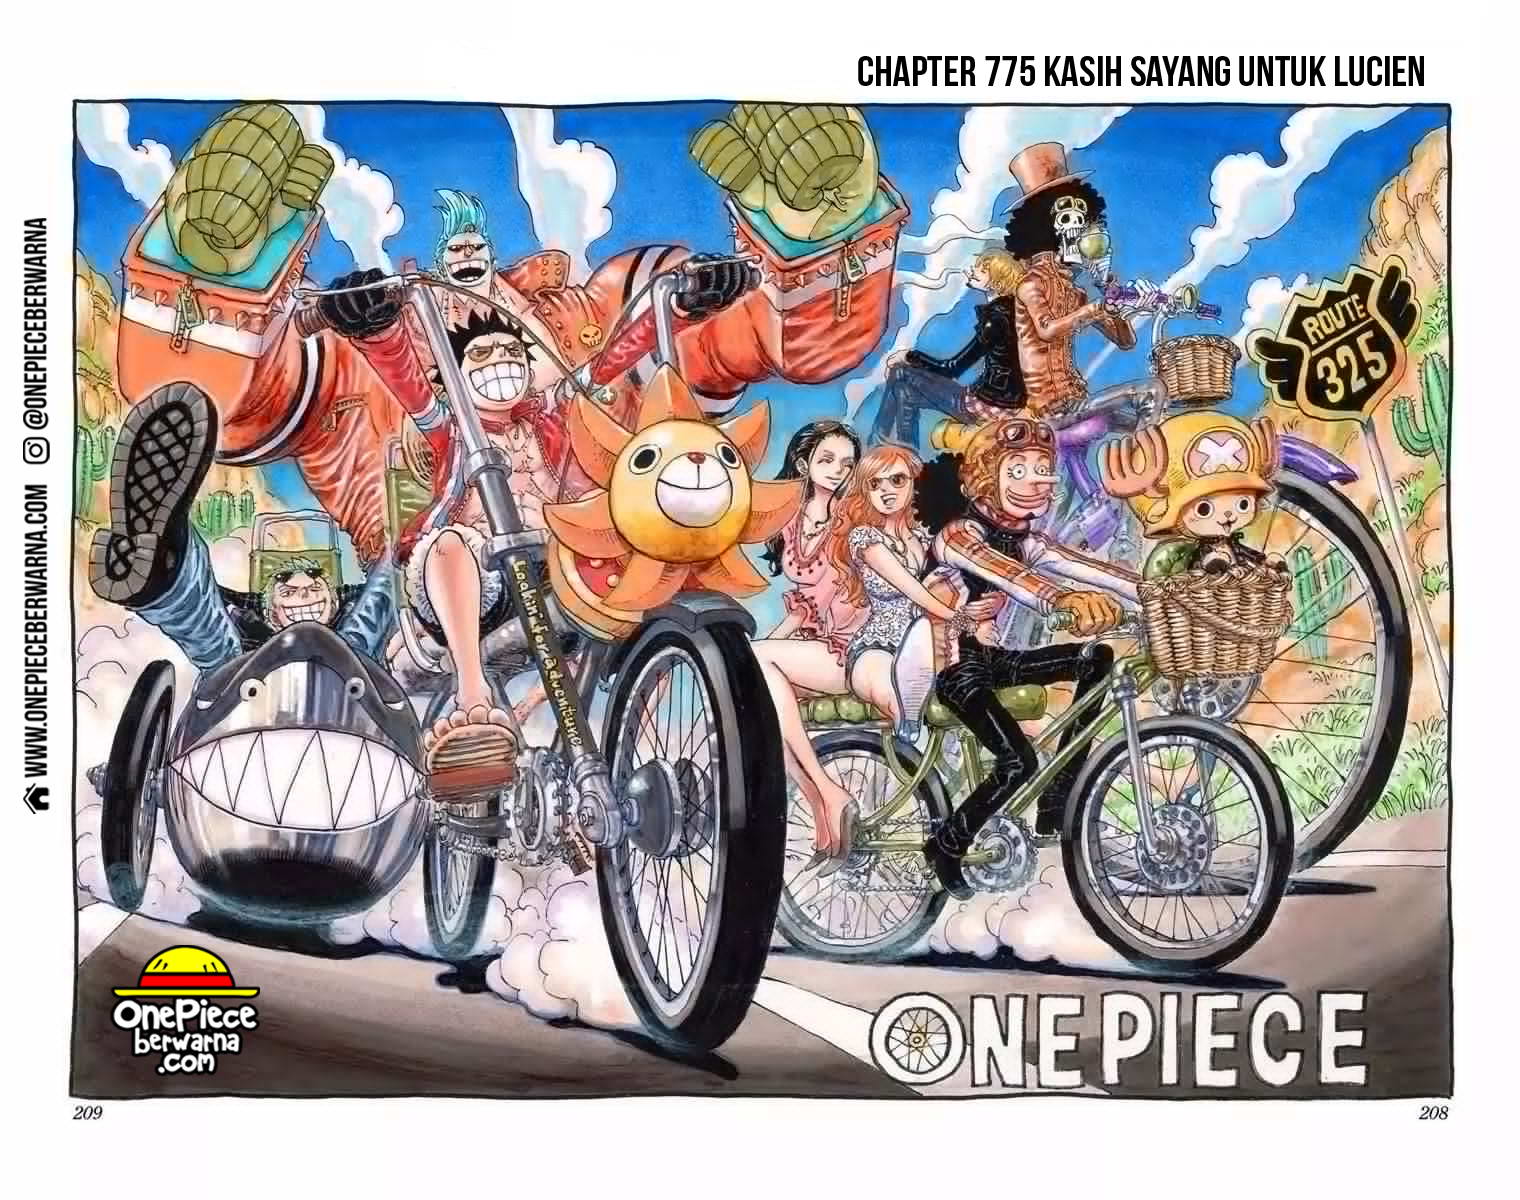 One Piece Berwarna Chapter 775